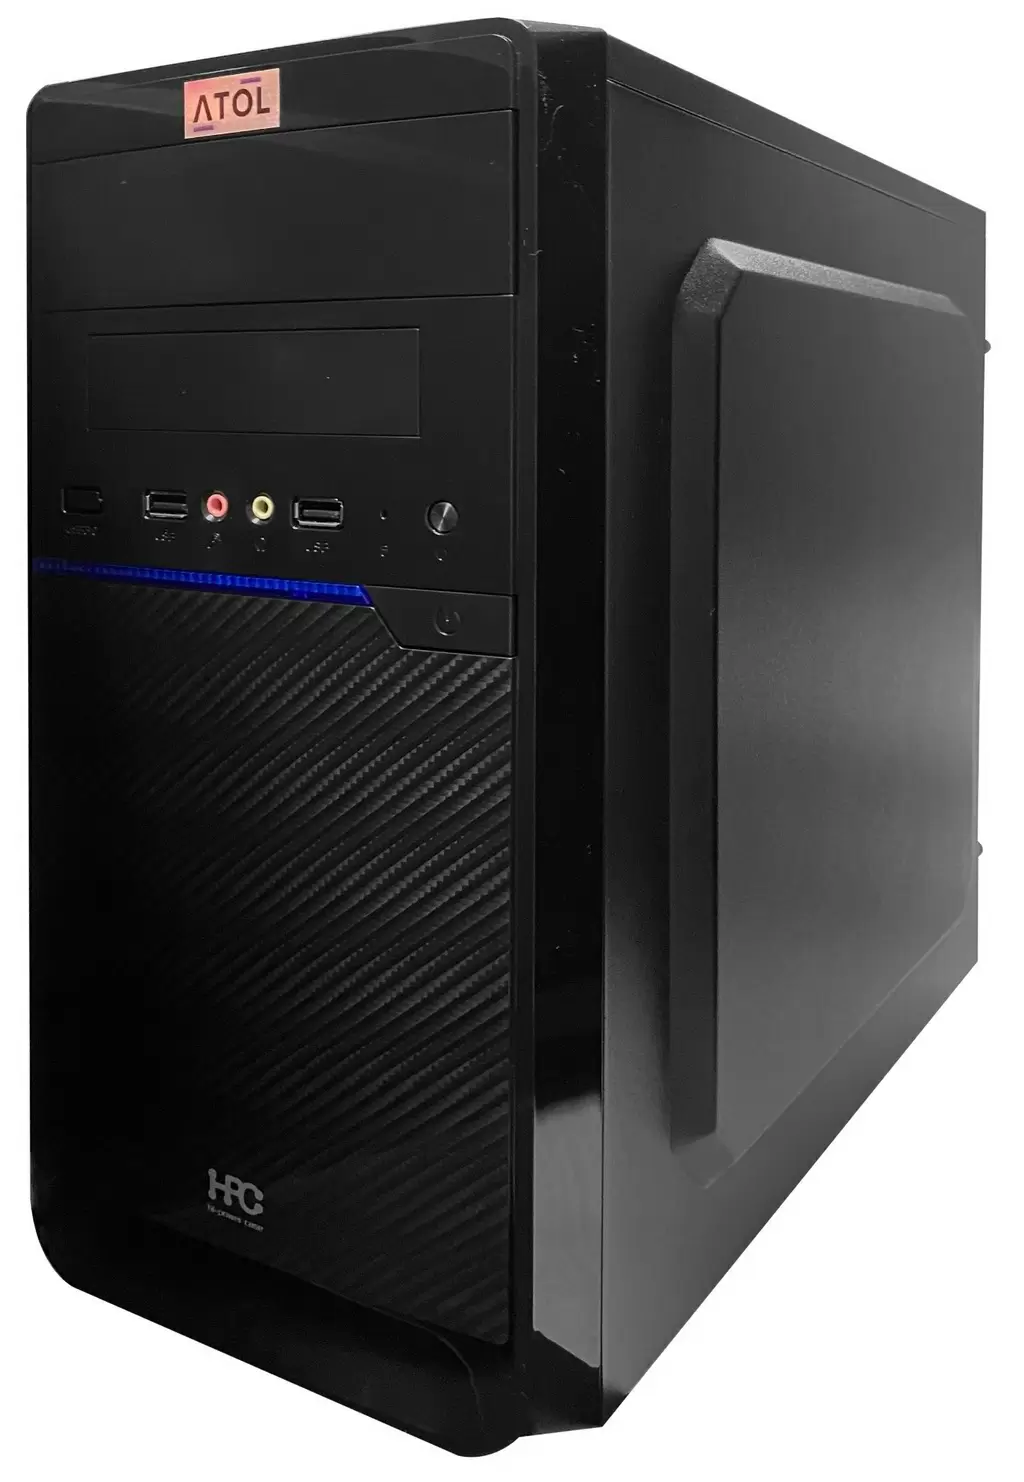 Системный блок Atol PC1025MP (AMD 3000G/8GB/240GB), черный